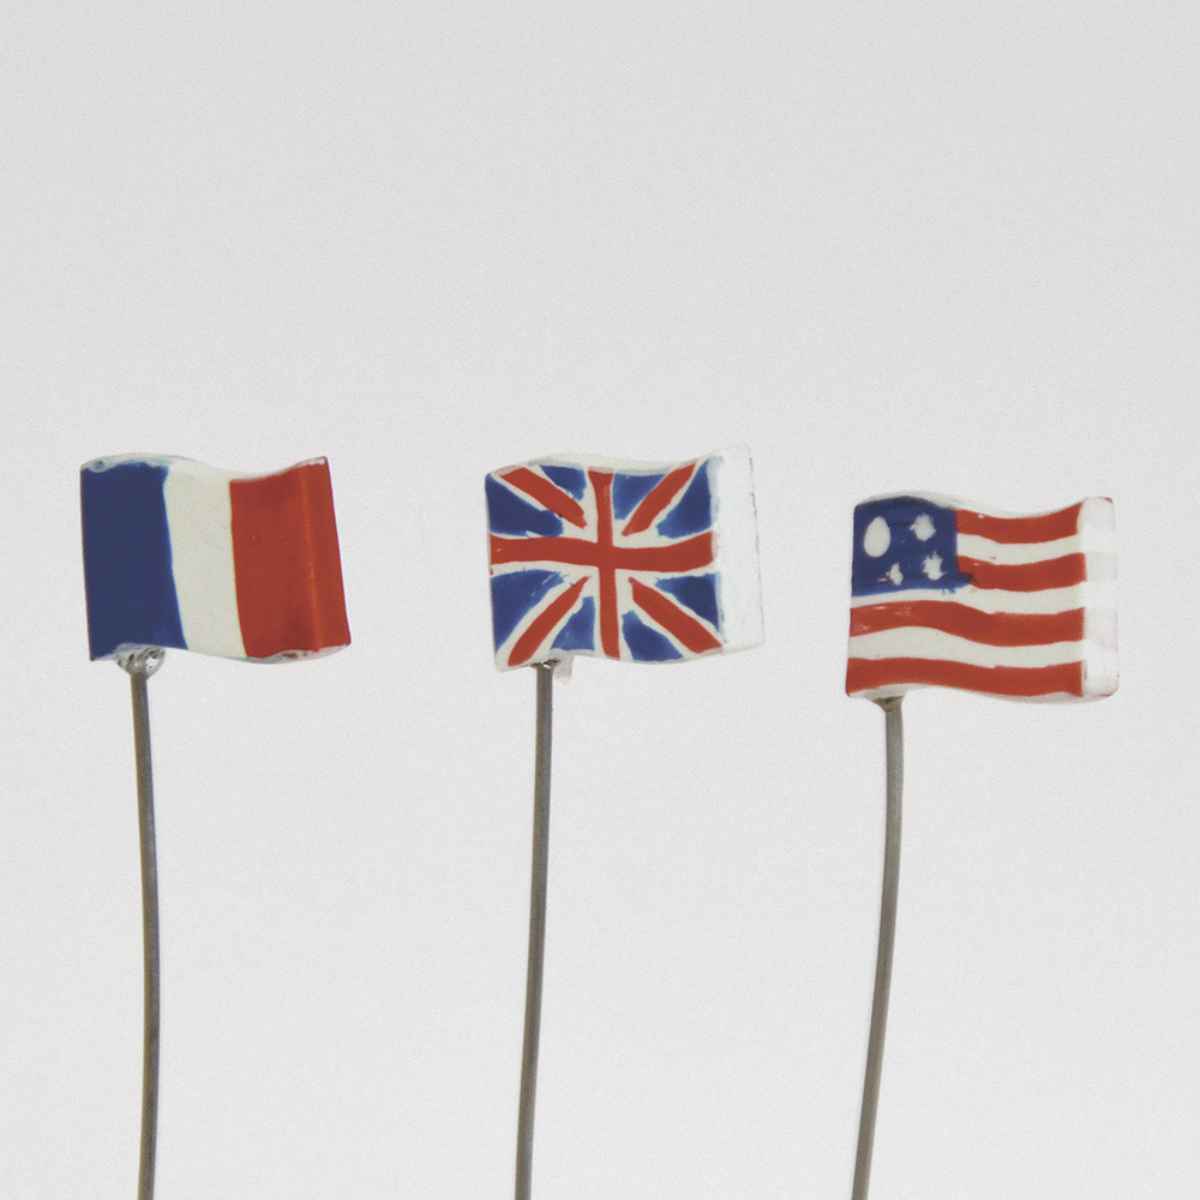 サイズ約 5〜6（cm）内容量3本入り（フランス国旗ピック、イギリス国旗ピック、アメリカ国旗ピック、各1本）材質レジン、スチール生産国フィリピン製区分返品・キャンセル区分（小型商品）ギフトラッピングページを見る園芸用品カテゴリから探す●フランス国旗、イギリス国旗、アメリカ国旗のピックが1本ずつ入った、ミニピック3本セットです。●レジンで作られたとても小さなピックです。●デフォルメされたデザインとミニマムなサイズ感が堪らないアイテムです。●小さなポットやプランターを飾るインドアガーデニングにもピッタリです。おすすめポイントプランターに手軽にアクセントを付けられるフランス国旗、イギリス国旗、アメリカ国旗のピックが1本ずつ入った、ミニピック3本セットです。レジンで作られたとても小さいピックなので、小さなポットやプランターを飾るインドアガーデニングにもピッタリです。商品詳細こだわりのある細かな作りデフォルメされたデザインとミニマムなサイズ感が堪らないシリーズです。こだわりのある細かな作りで、ガーデニングアイテムに最適です。サイズ※同シリーズ別商品の写真を使用していますが、大きさは共通です。ご注意点※ハンドメイドの為、サイズや色、焼印などに個体差が生じる場合があります。関連キーワード：星条旗 はた ハタ フラッグ グッズ ミニ ガーデニングピック ガーデニング ガーデン サインピック スティック 園芸用品 園芸ピック 園芸グッズ 植木鉢 プランター 植物 オブジェ ディスプレイ インテリア小物 庭 飾り 飾る オシャレ かわいい カワイイ 可愛い オーナメントピック 癒し 癒やし おすすめ オススメ LH7350よく一緒に購入されている商品プランター スタンド ココハル のせるんです32,180円プランター スタンド ココハル のせるんです21,920円プランター スタンド ココハル のせるんですス2,330円関連商品はこちらガーデンピック ミニピック 傘 風車 ハウス 572円ガーデンピック ミニピック スター ハート 旗572円ガーデンピック ミニピック スクーター 汽車 572円ガーデンピック ミニピック イチゴ ニンジン 572円ガーデンピック ミニピック ヘリコプター 気球572円ガーデンピック ミニピック カモメ クジラ ヨ572円ガーデンピック ミニピック クワガタ タマムシ572円ガーデンピック ミニピック オオハシ カメレオ572円ガーデンピック ミニピック ホタル トンボ ハ572円ガーデンピック ミニピック ヒツジ ブタ ウシ572円ガーデンピック ミニピック リス ウサギ パン572円ガーデンピック ミニピック ヒヨコ フクロウ 572円